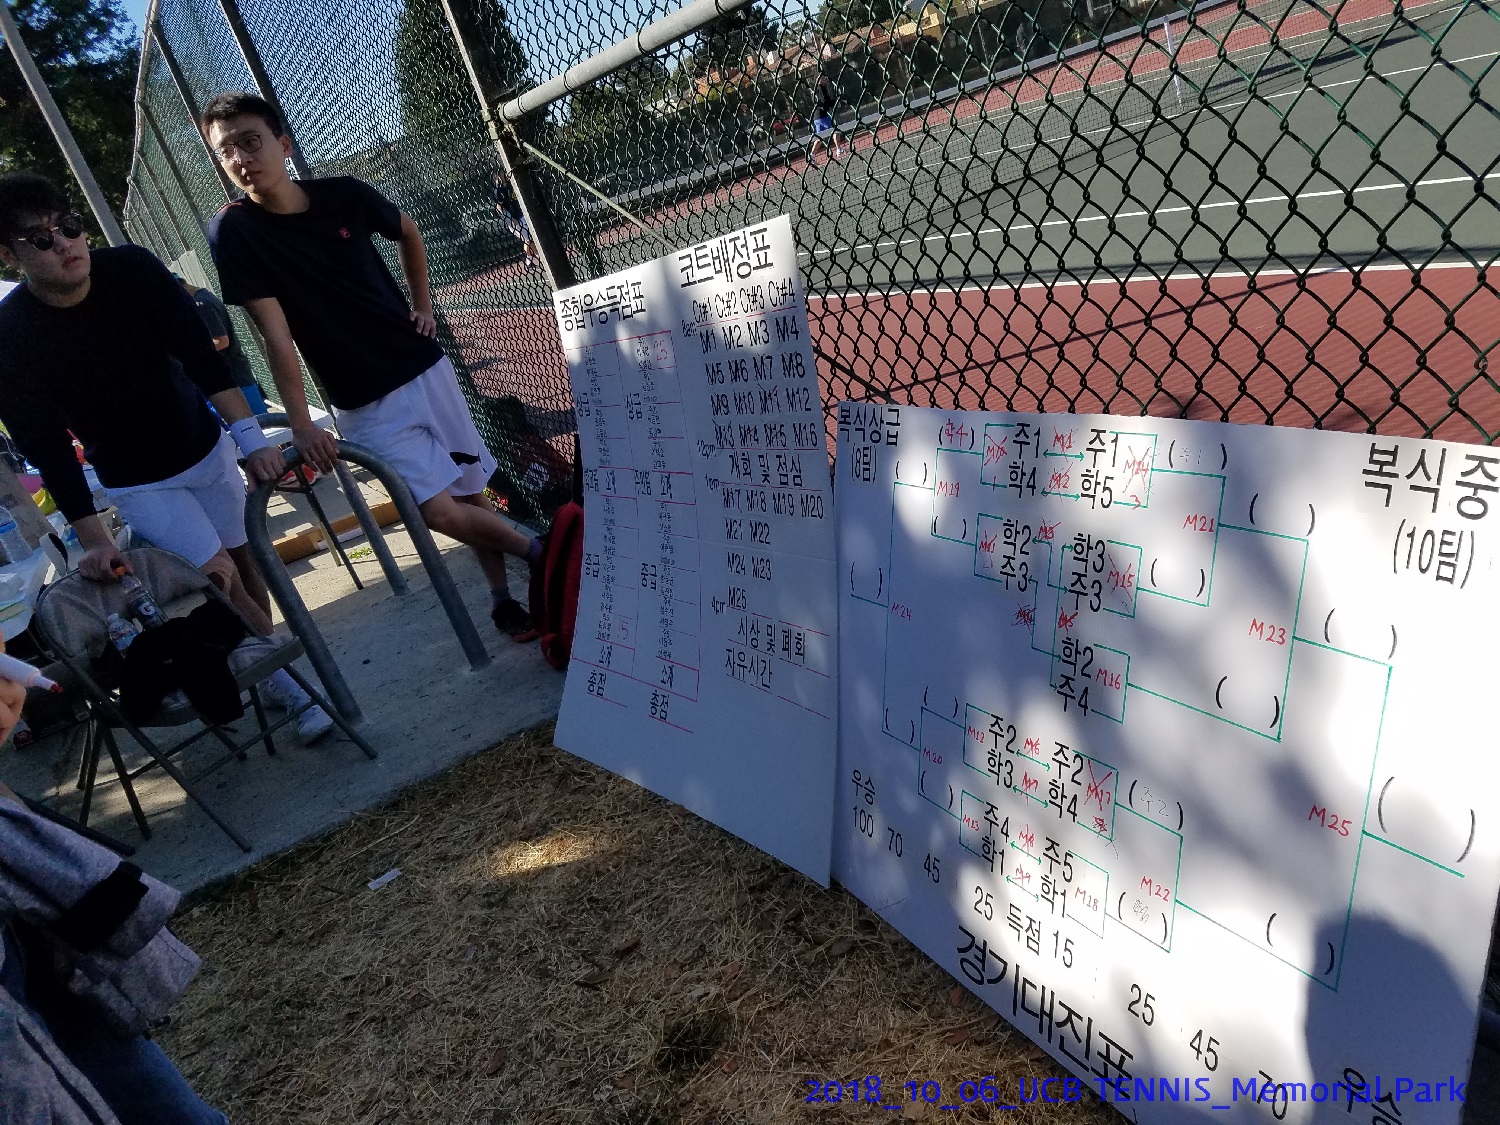 resized_2018_10_06_UCB Tennis at Memorial Park_102316.jpg